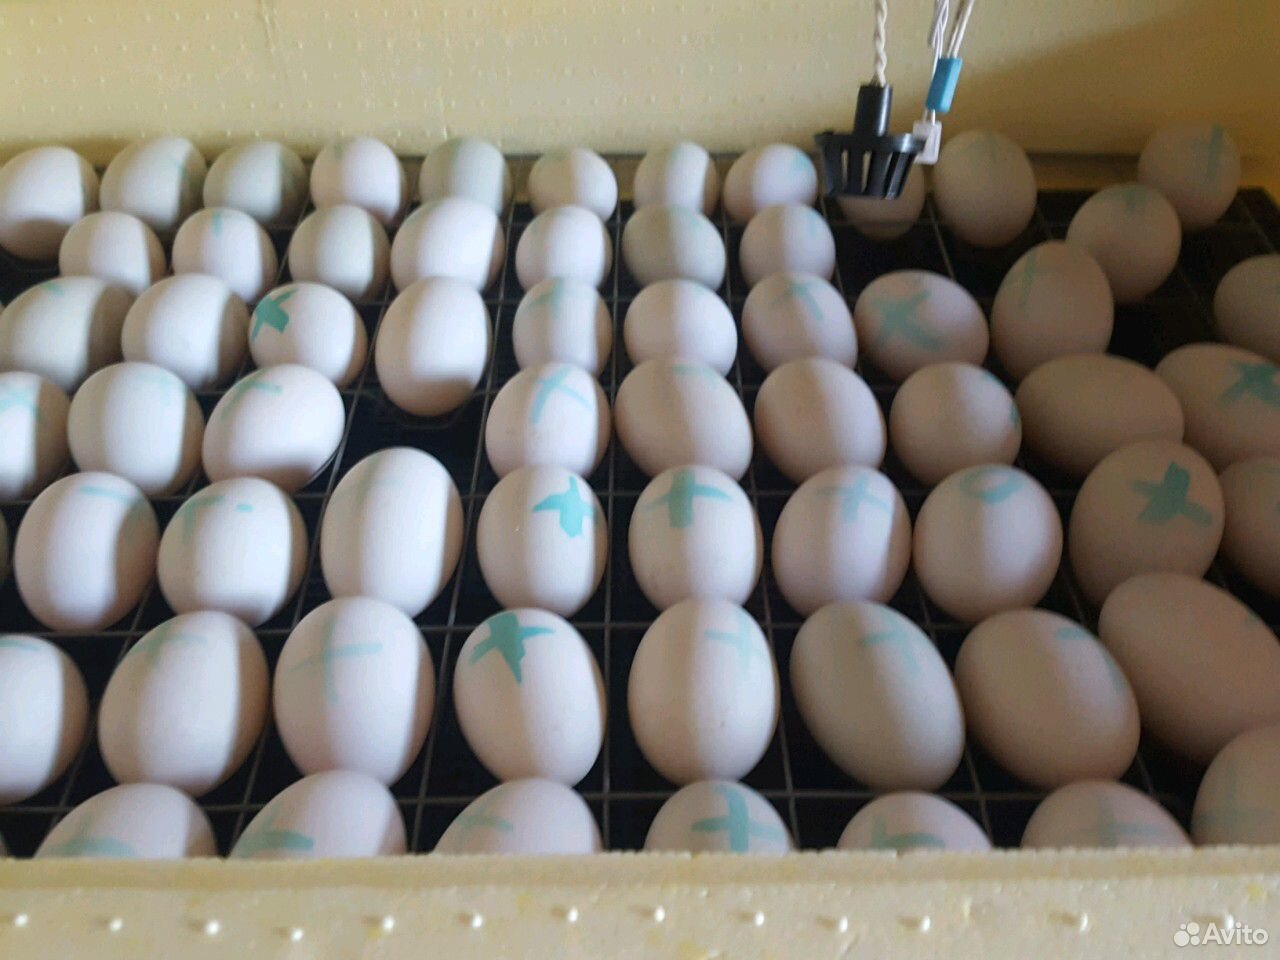 Яйцо утиное инкубационное. Инкубация яйца утки старт 53. Инкубационное яйцо объявление. Яйца уток. Инкубационное яйцо купить в брянской